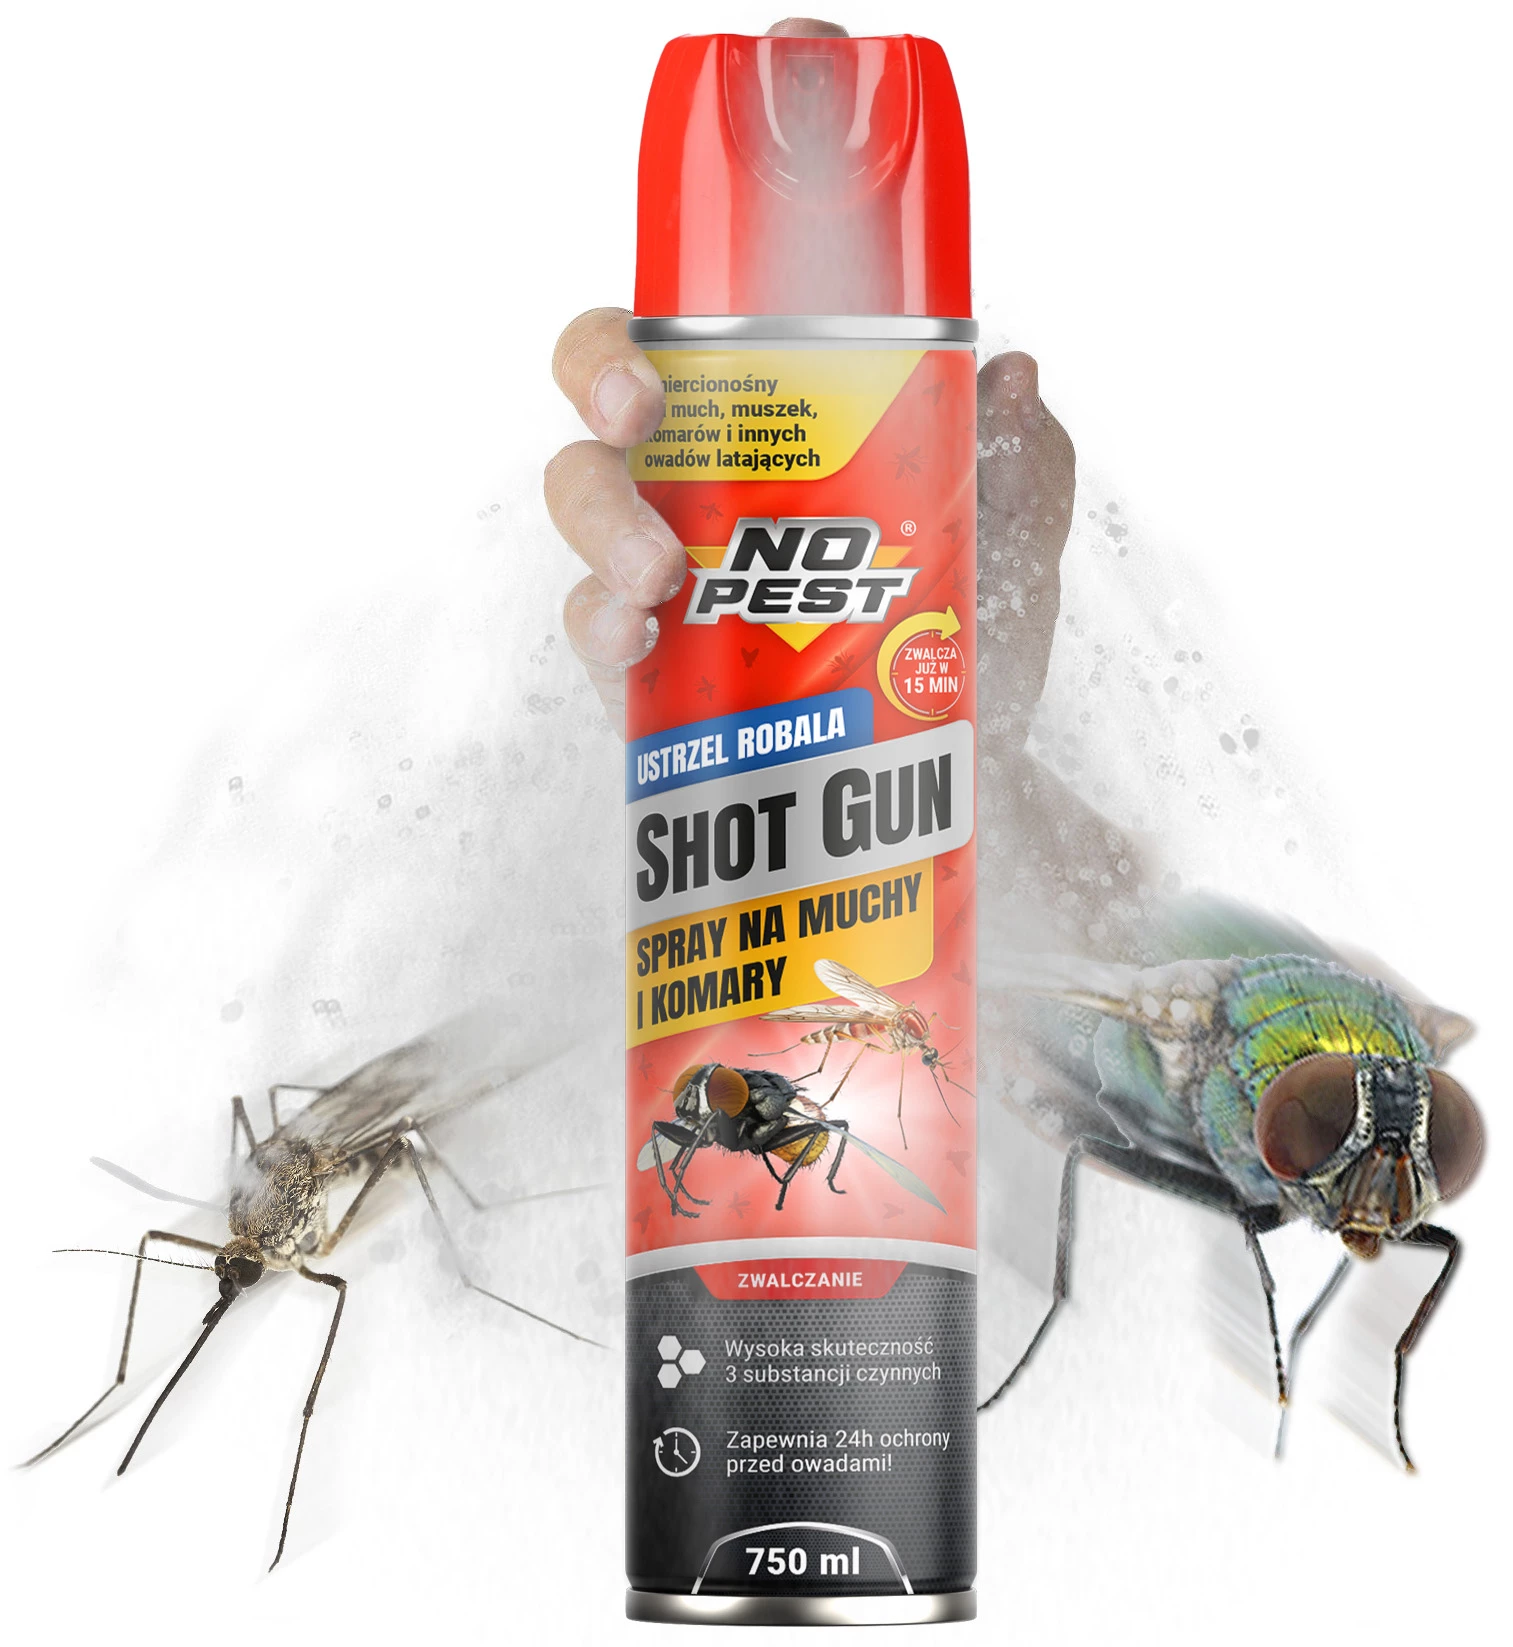 preparat na muchy, środek na muchy, muchozol, NO PEST na muchy, spray na muchy, na komary w pomieszczeniu, środek na ćmianki